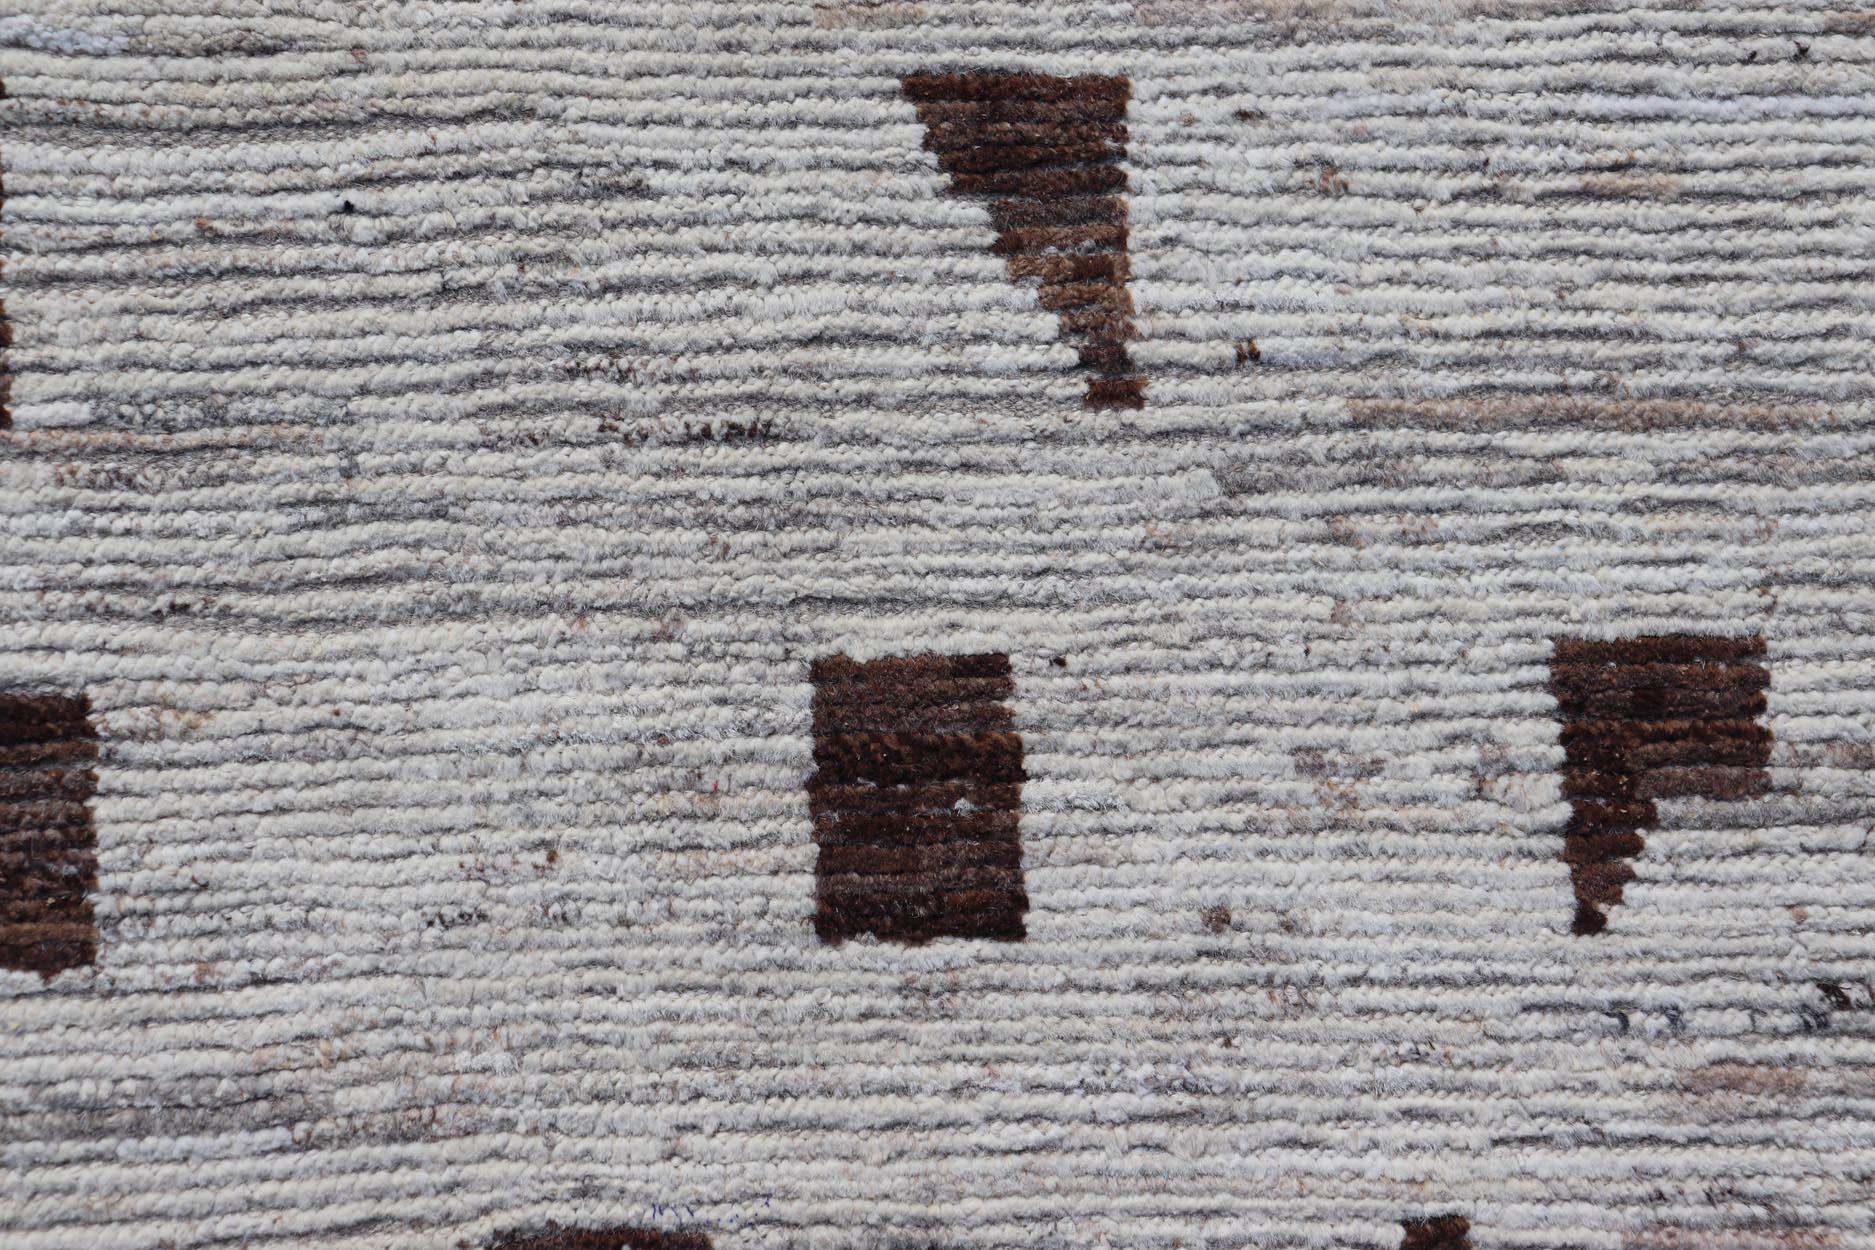 Distressed Modern Rug im marokkanischen Stil im Schachbrettmuster Distressed Modern Casual rug. Moderner lässiger handgeknüpfter Teppich aus weißer/weißer Wolle mit zufälligen geometrischen Formen in Brauntönen. Keivan Woven Arts; Teppich SNK-1150,